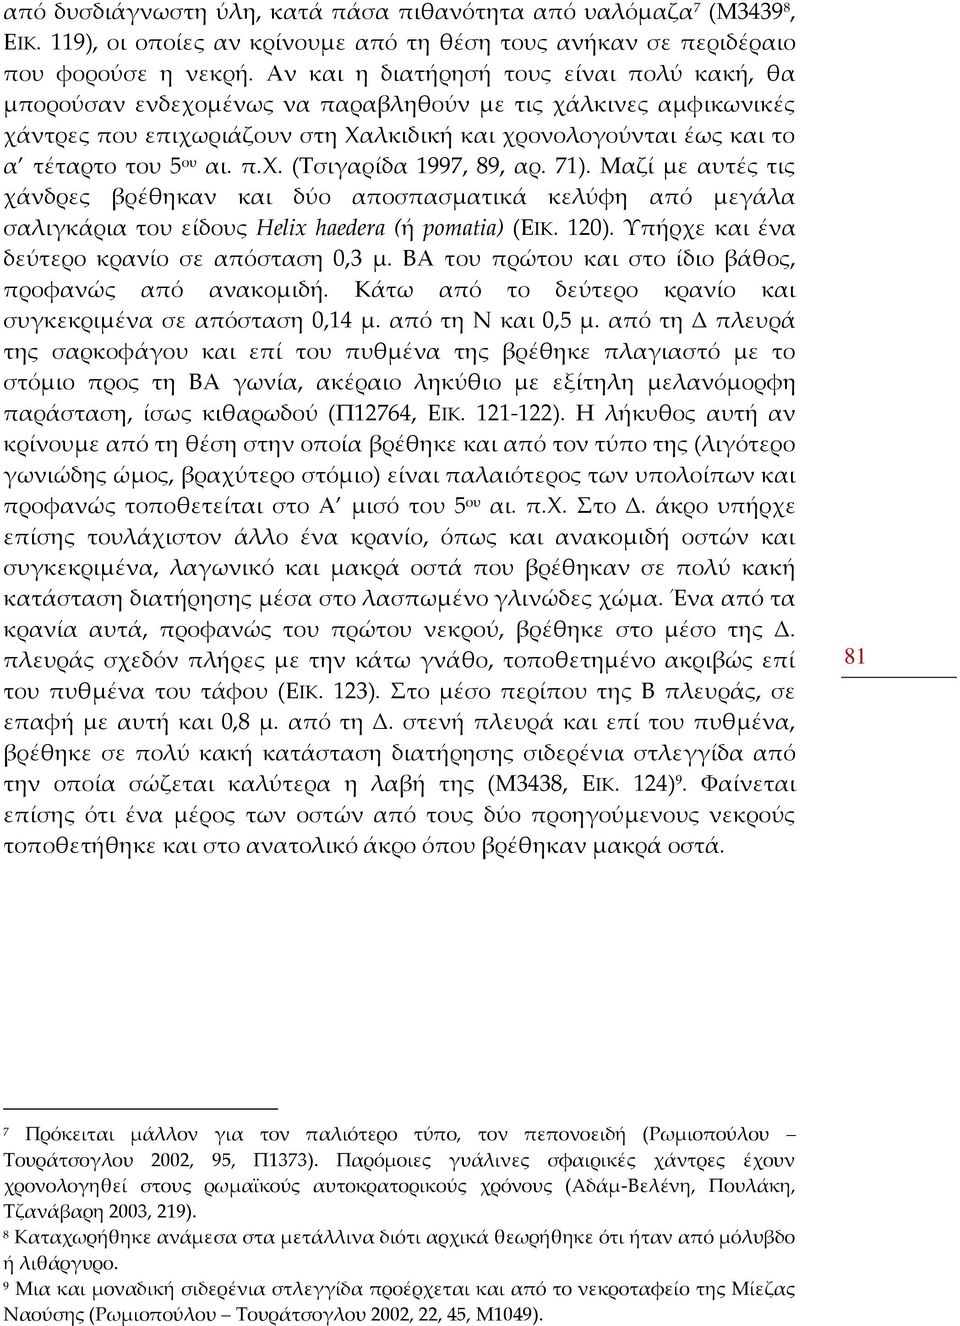 π.χ. (Τσιγαρίδα 1997, 89, αρ. 71). Μαζί με αυτές τις χάνδρες βρέθηκαν και δύο αποσπασματικά κελύφη από μεγάλα σαλιγκάρια του είδους Helix haedera (ή pomatia) (ΕΙΚ. 120).